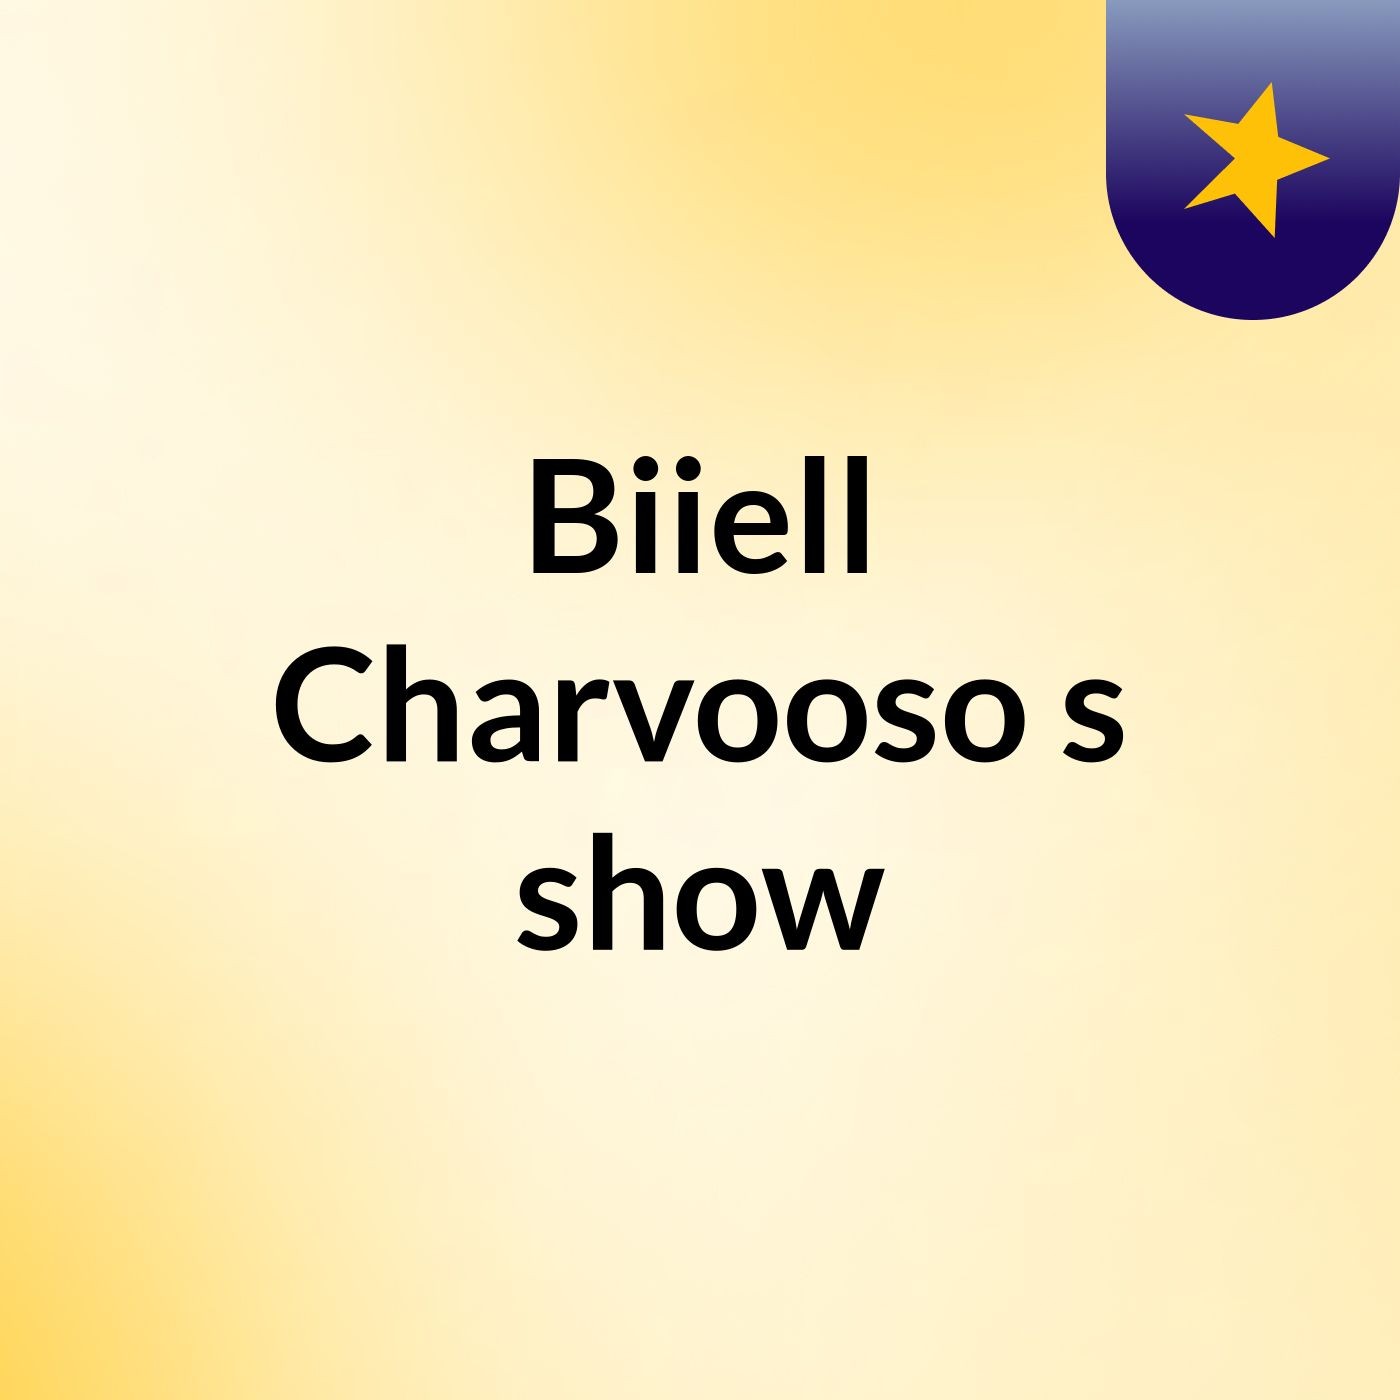 Biiell Charvooso's show